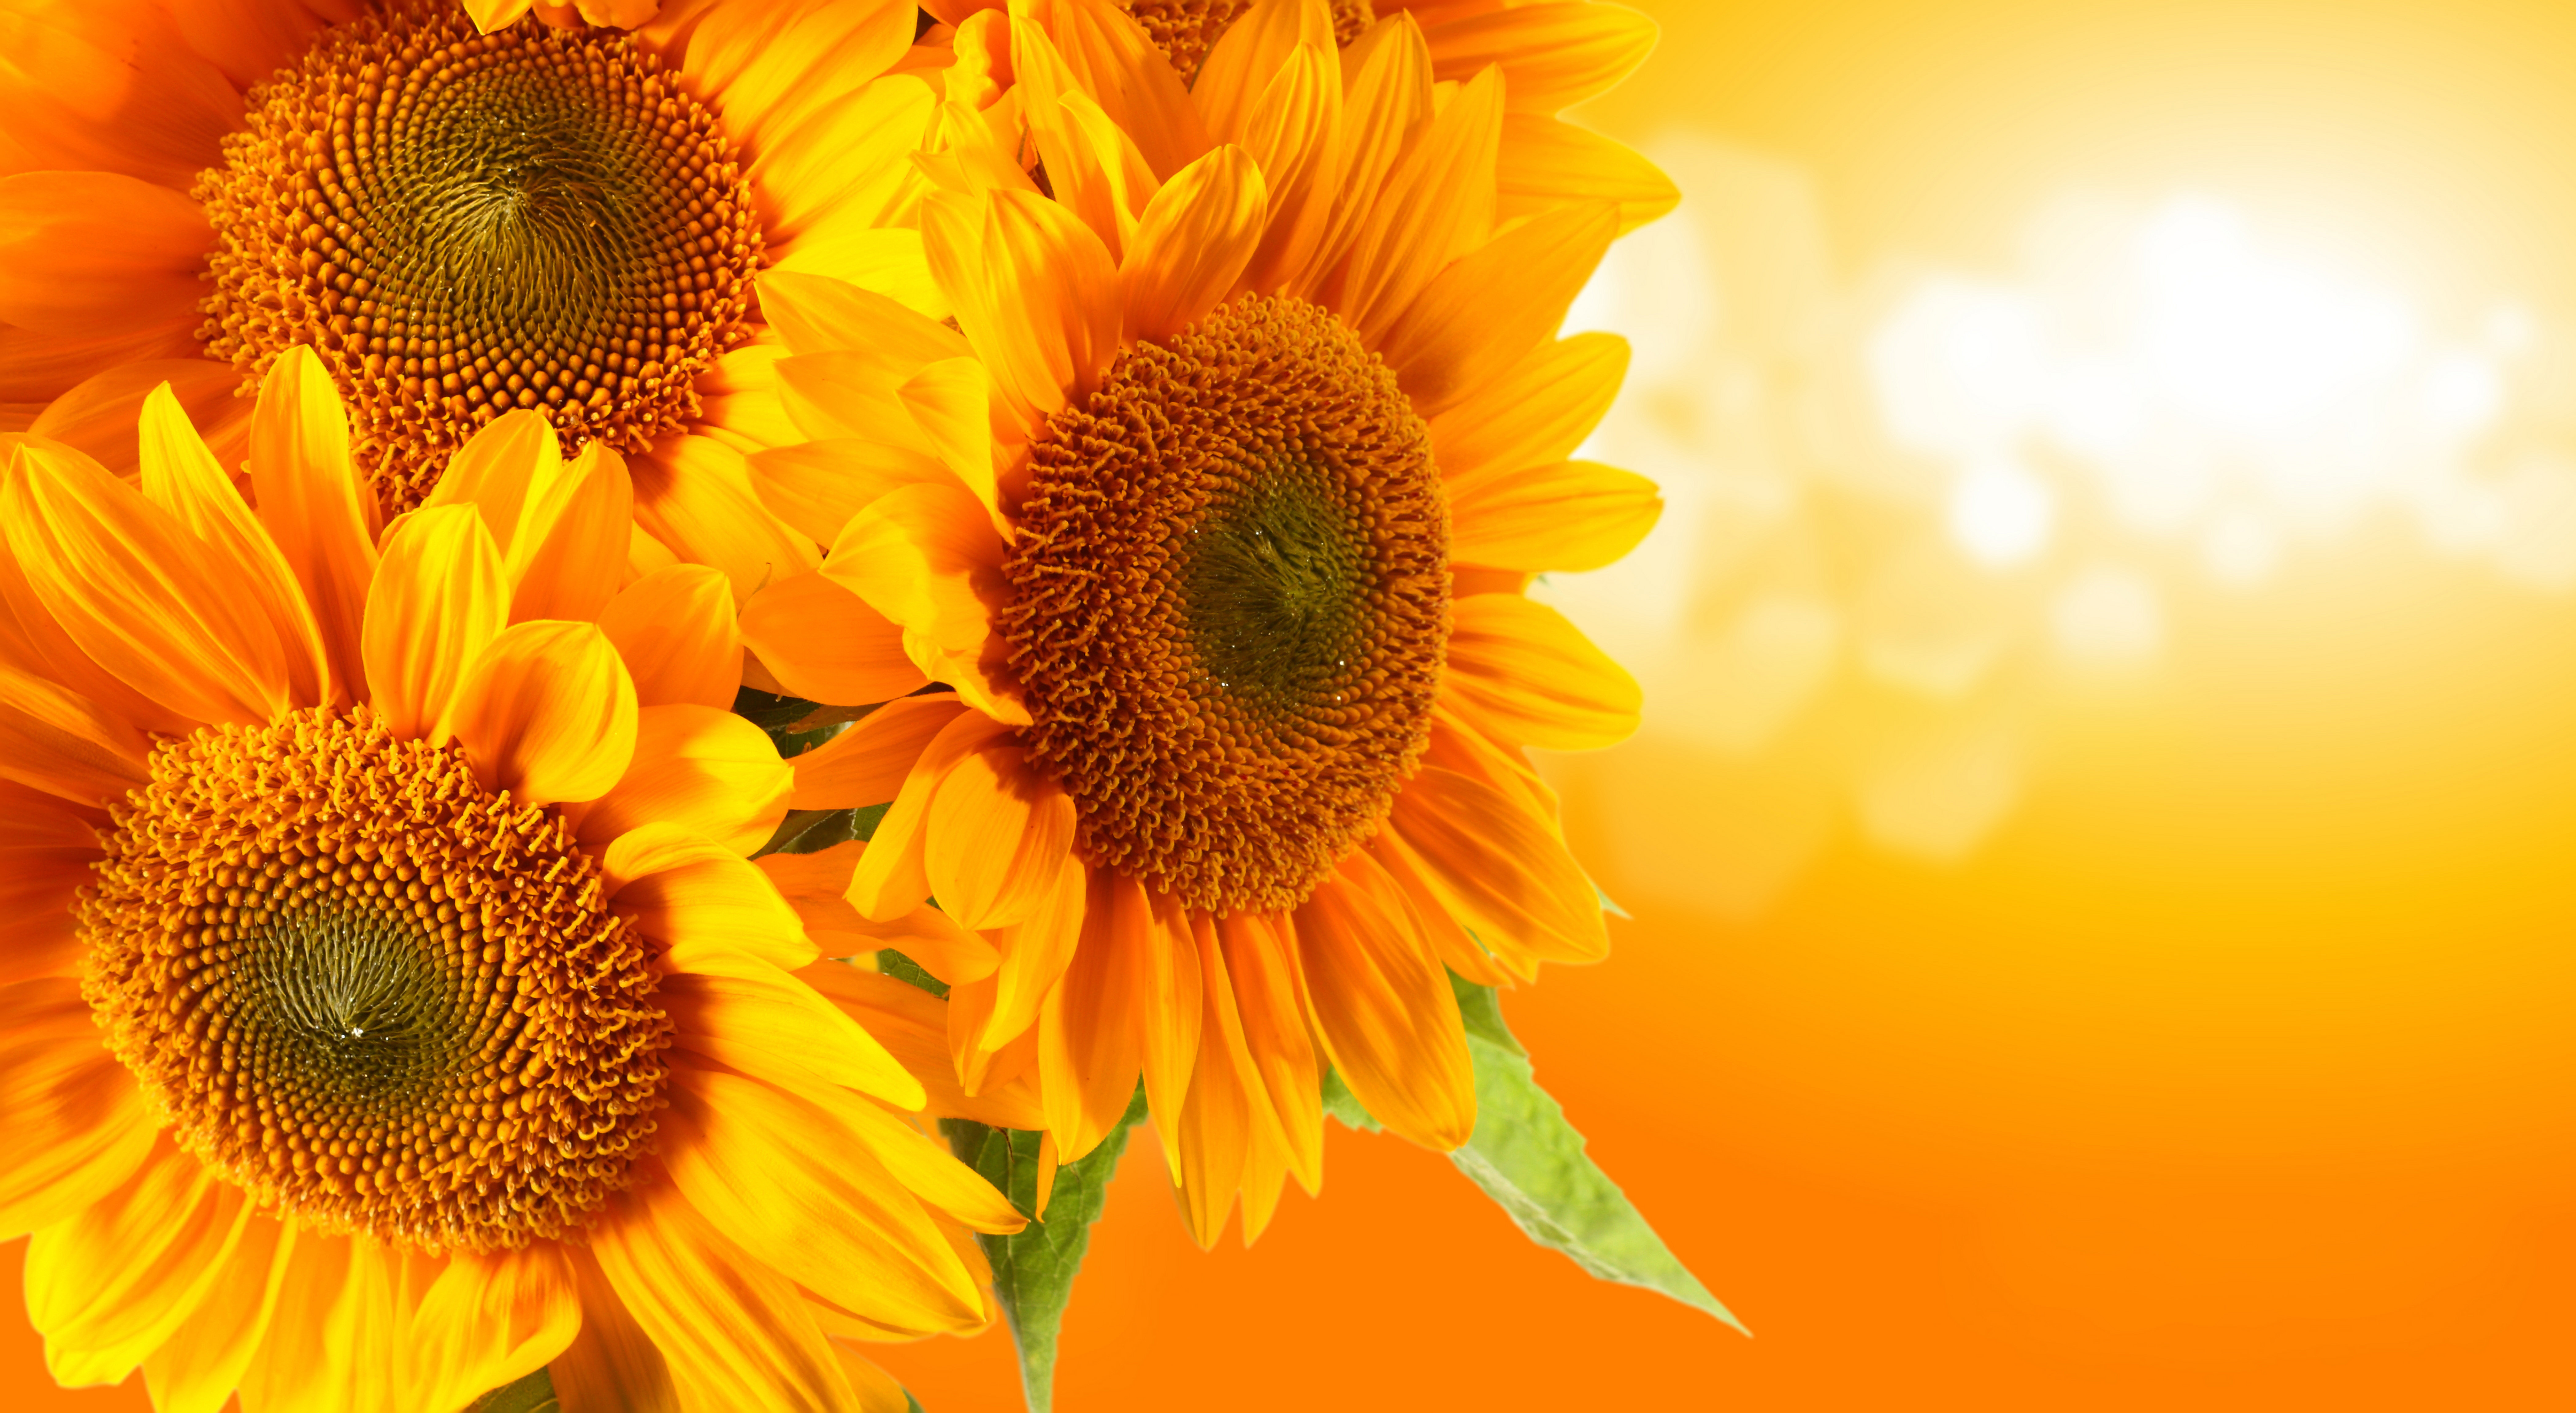 Sunflower 8k Ultra HD Wallpaper